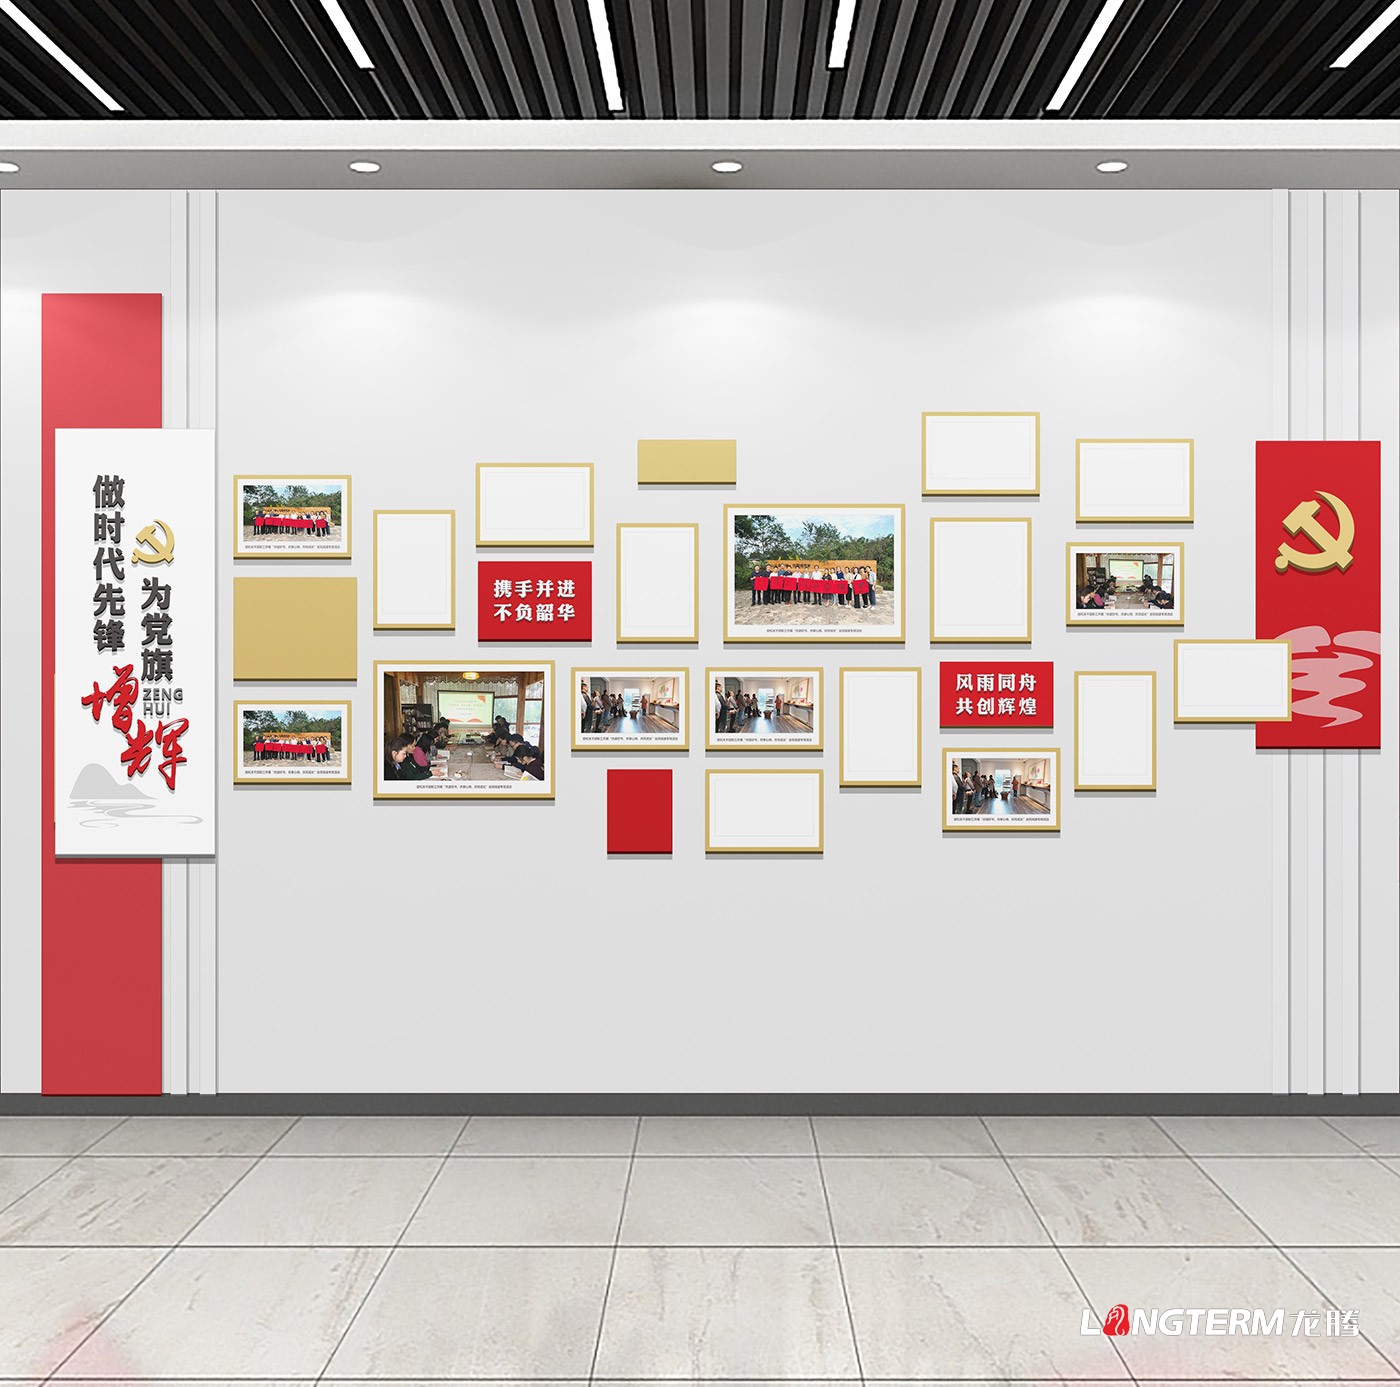 自贡环保局示范性综合教育基地建设_党建文化策划及实施方案_党政红色文化上墙设计